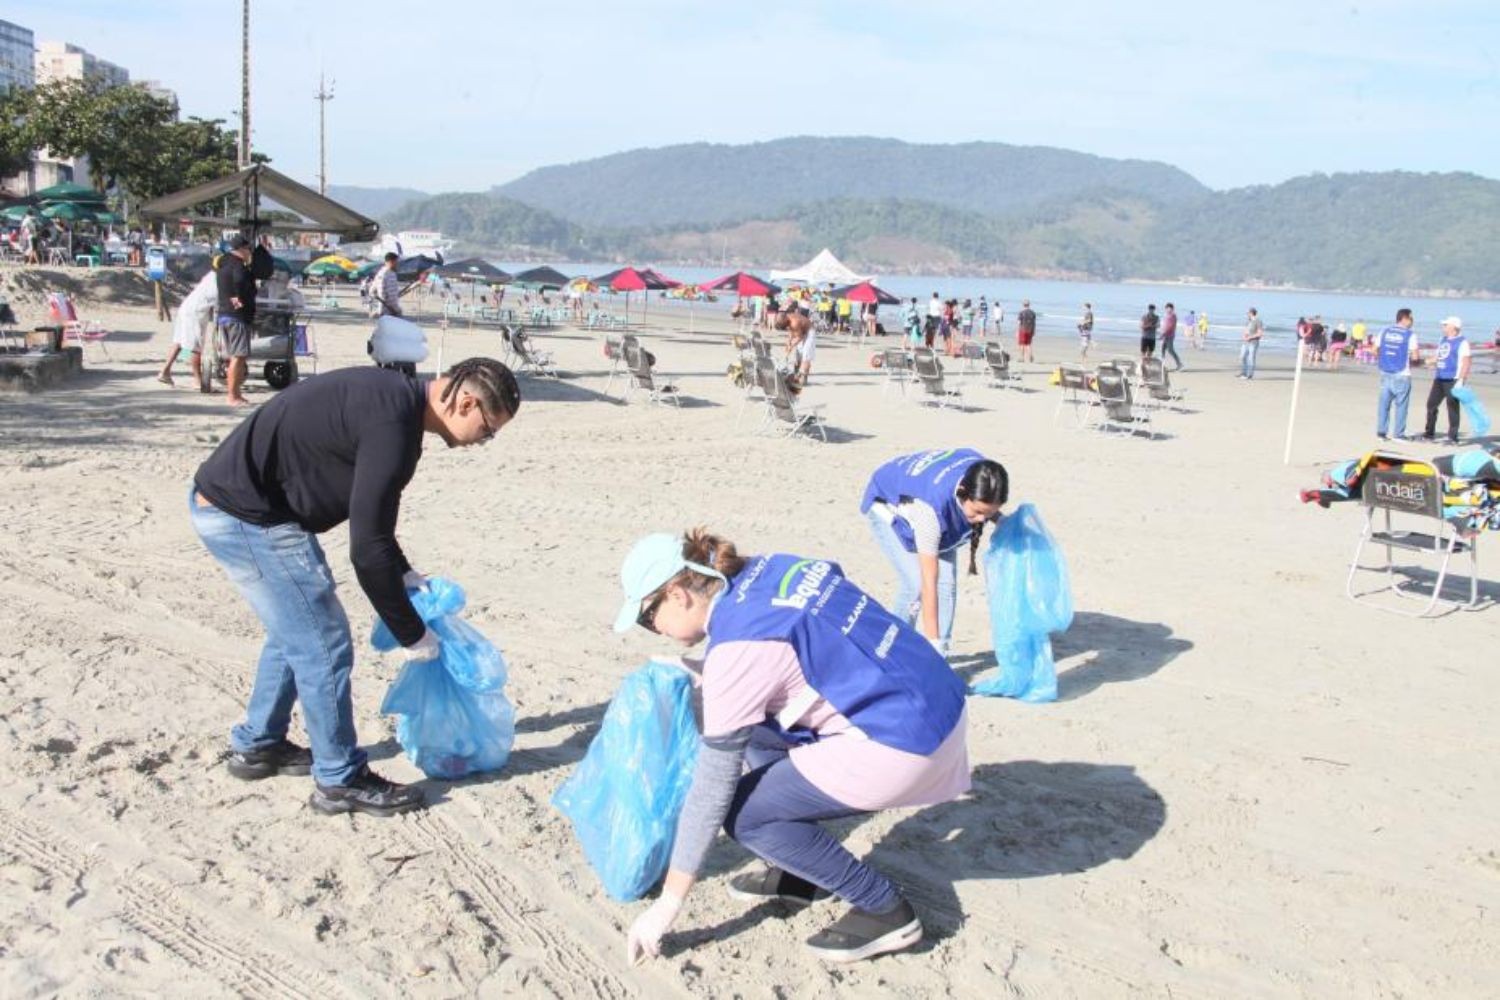 Mutirão de limpeza retira mais de 7 kg de microlixo em praia de Santos, SP 